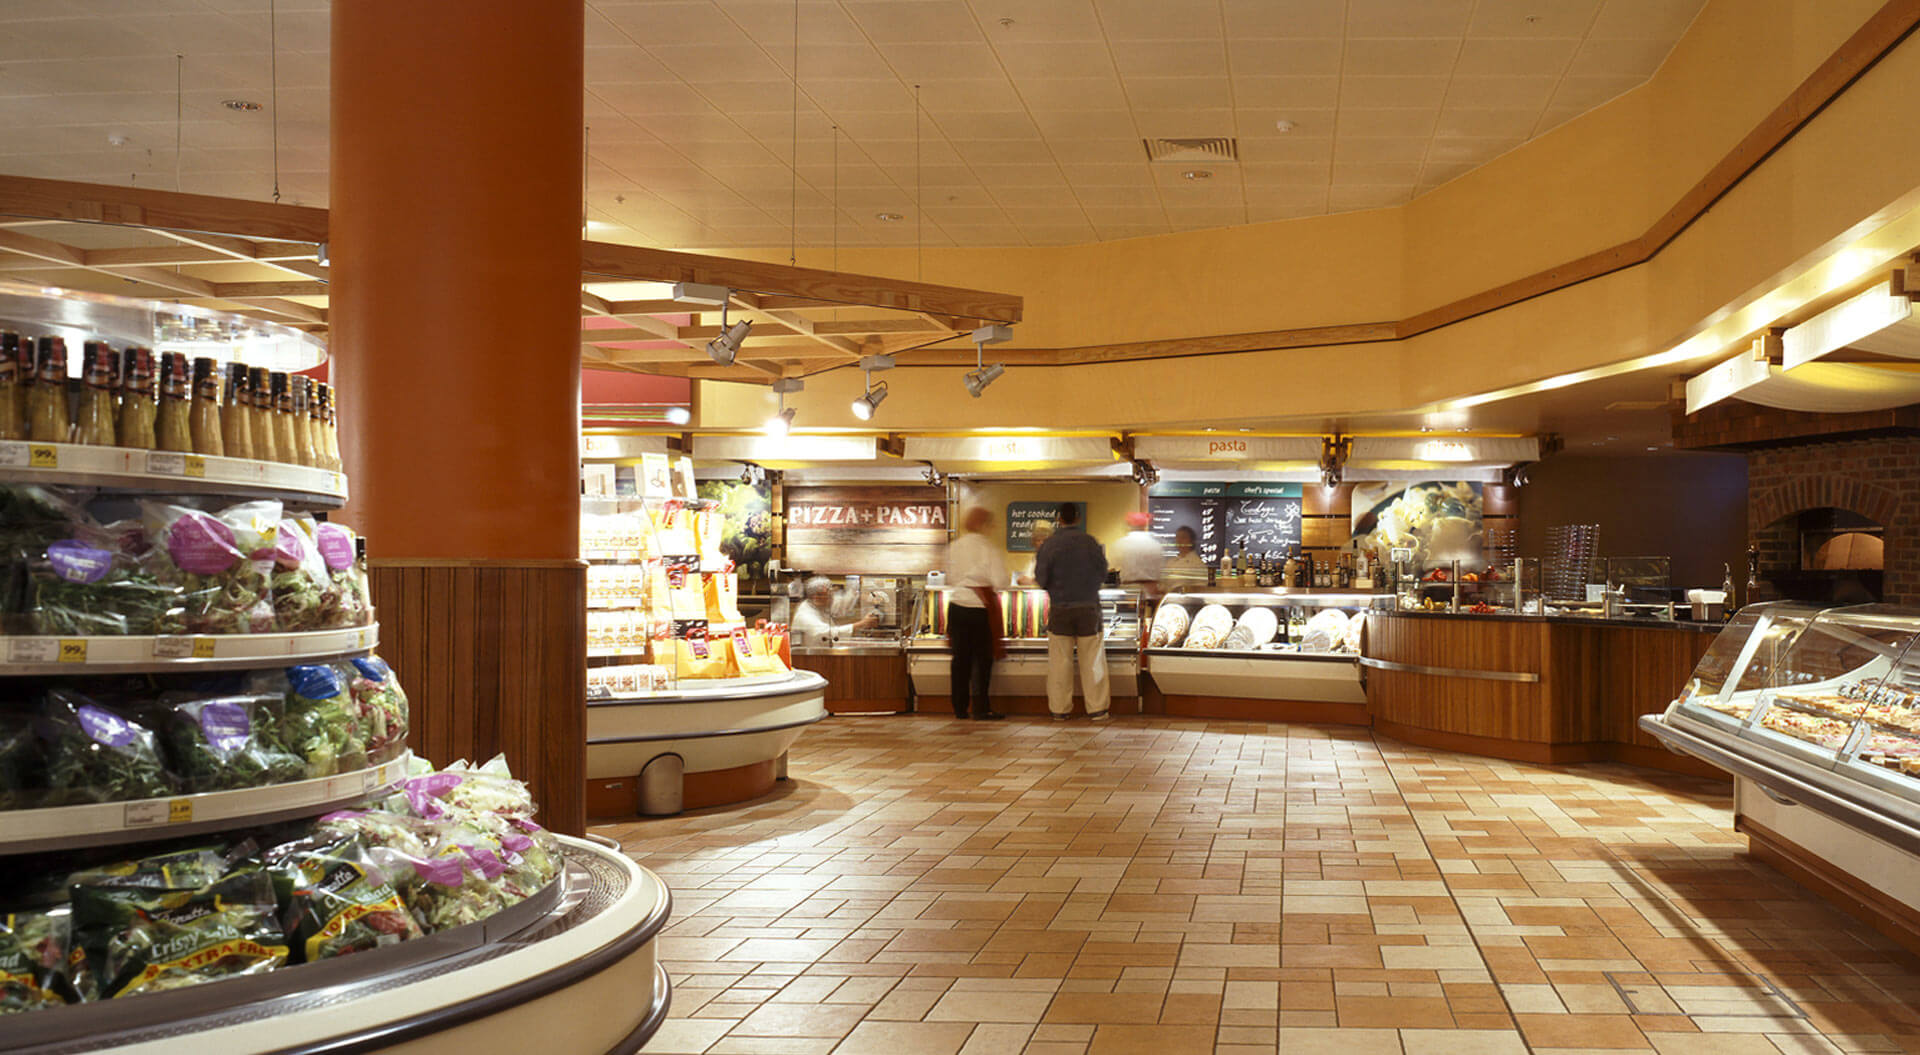 Safeway supermarkets interior store design for chilled island merchandising  pizza pasta to go